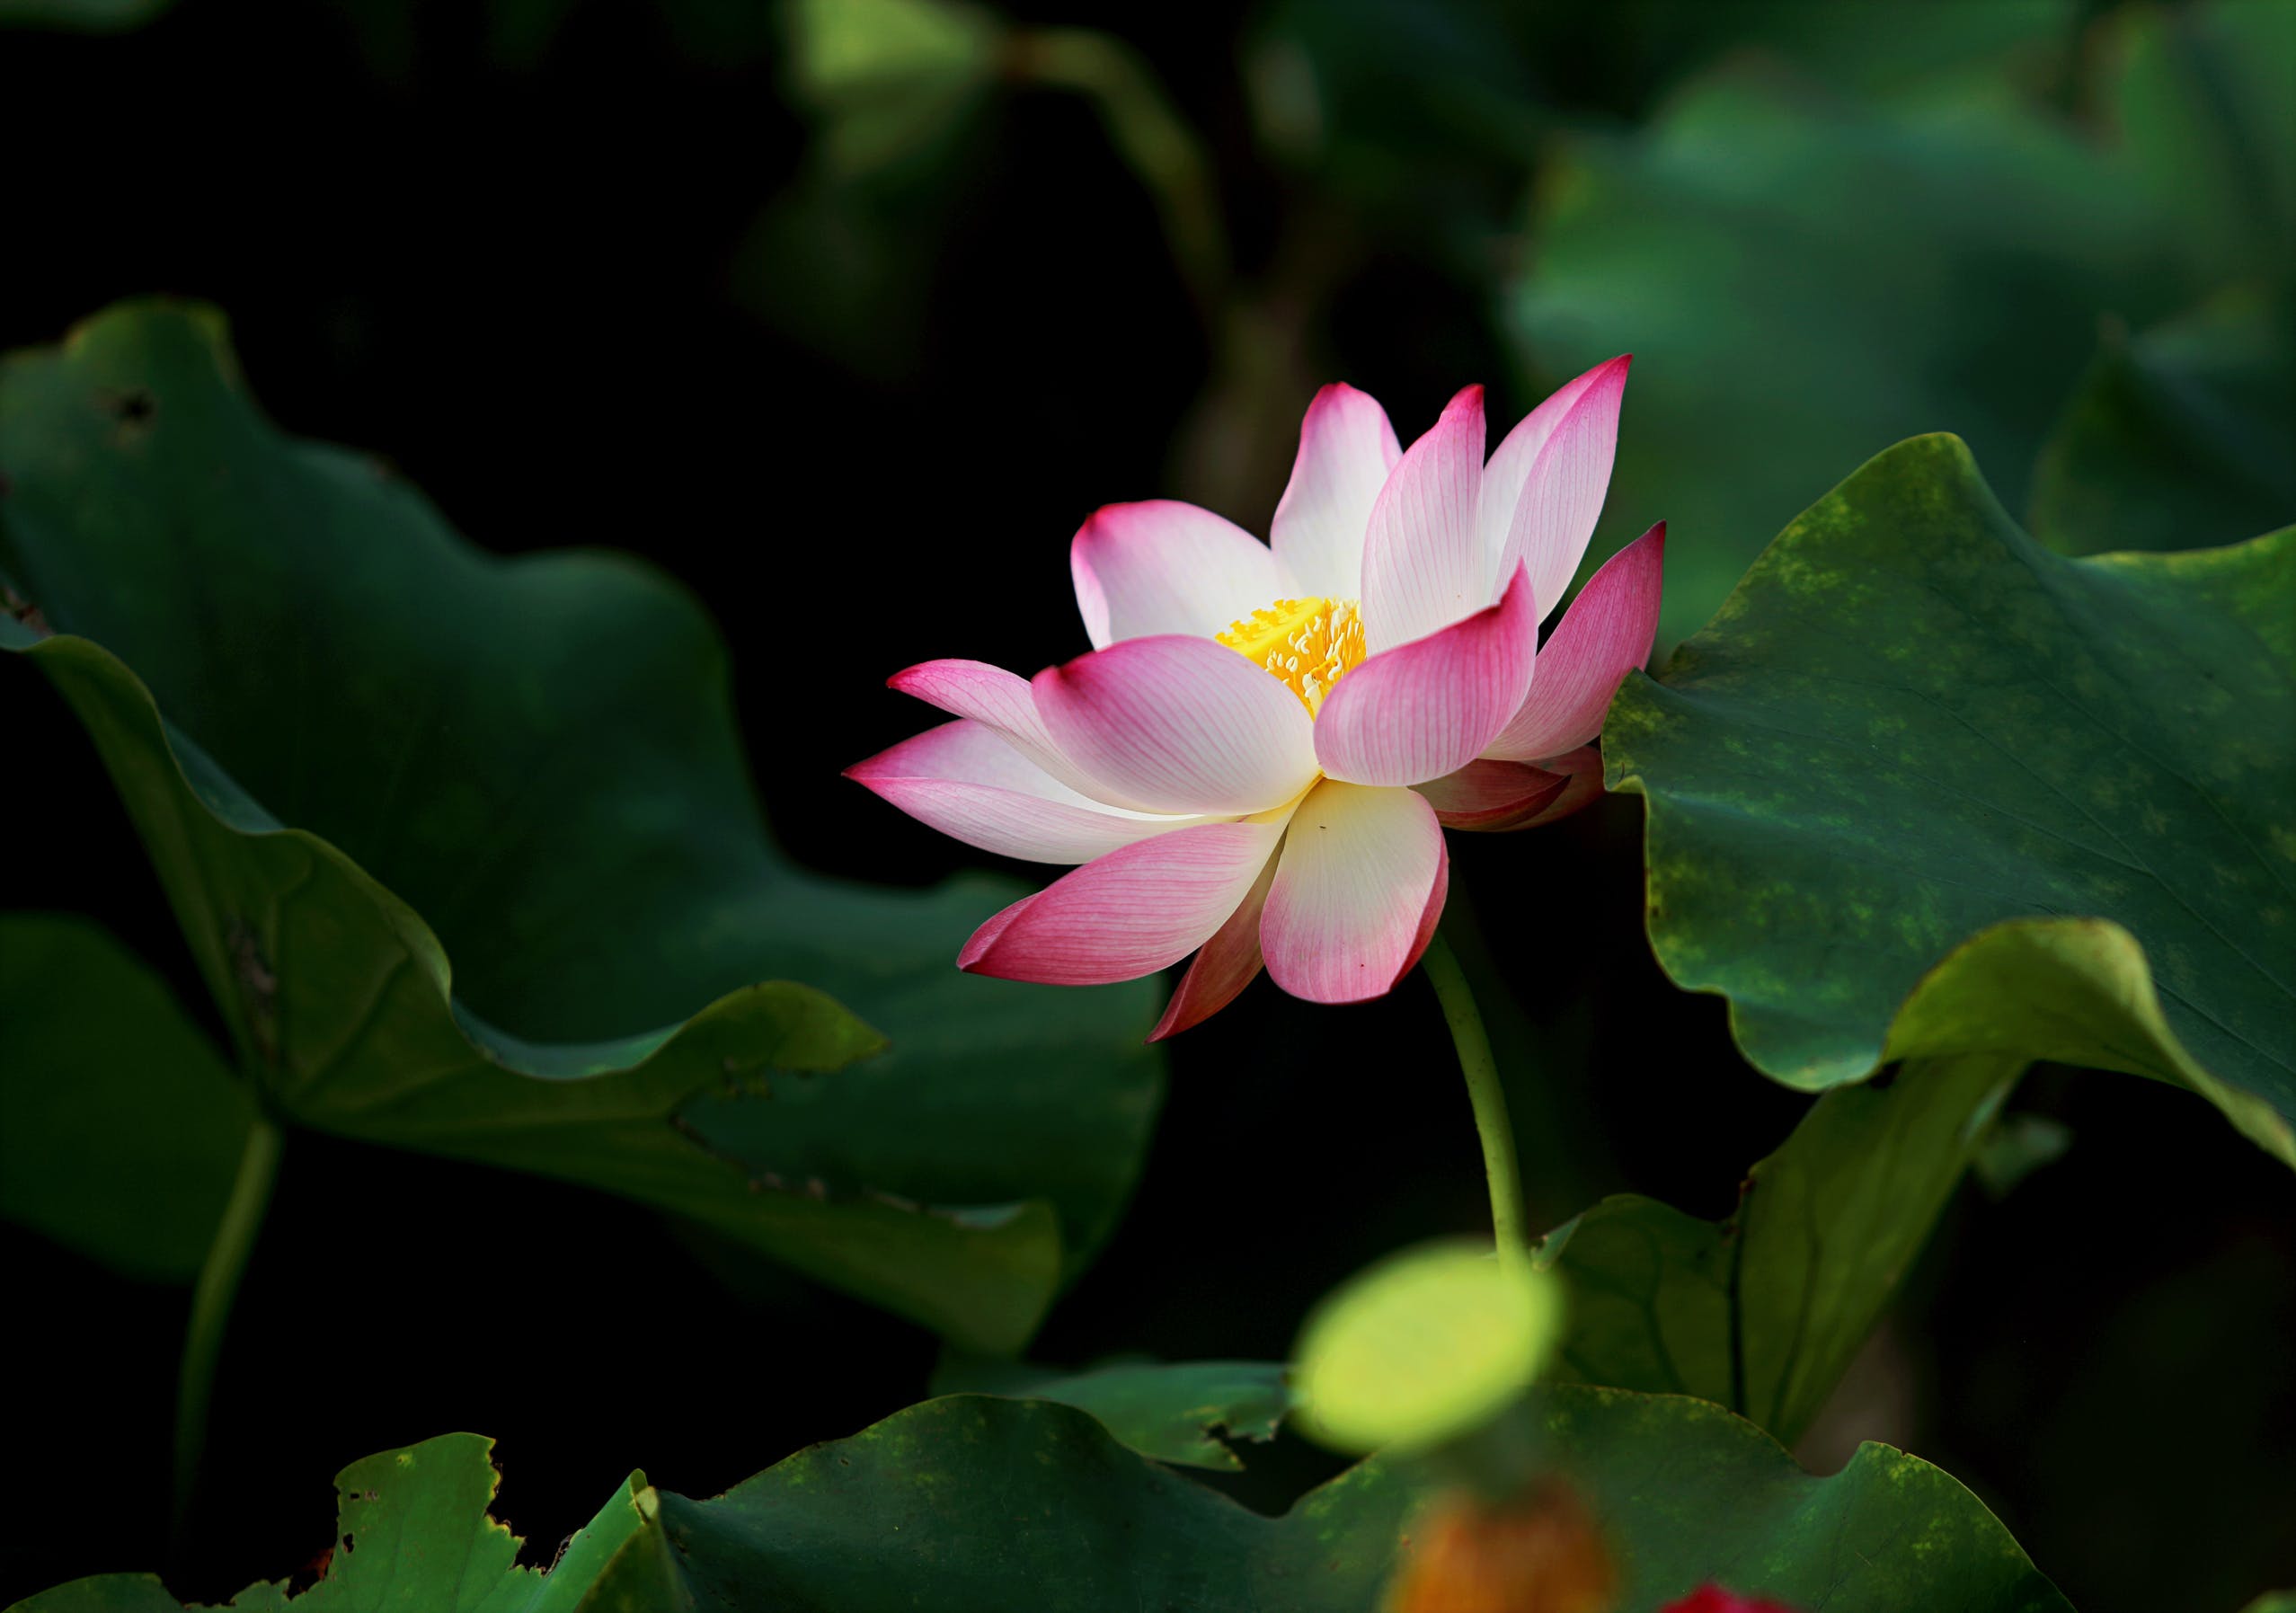 peaceful pink lotus flower in green leaves